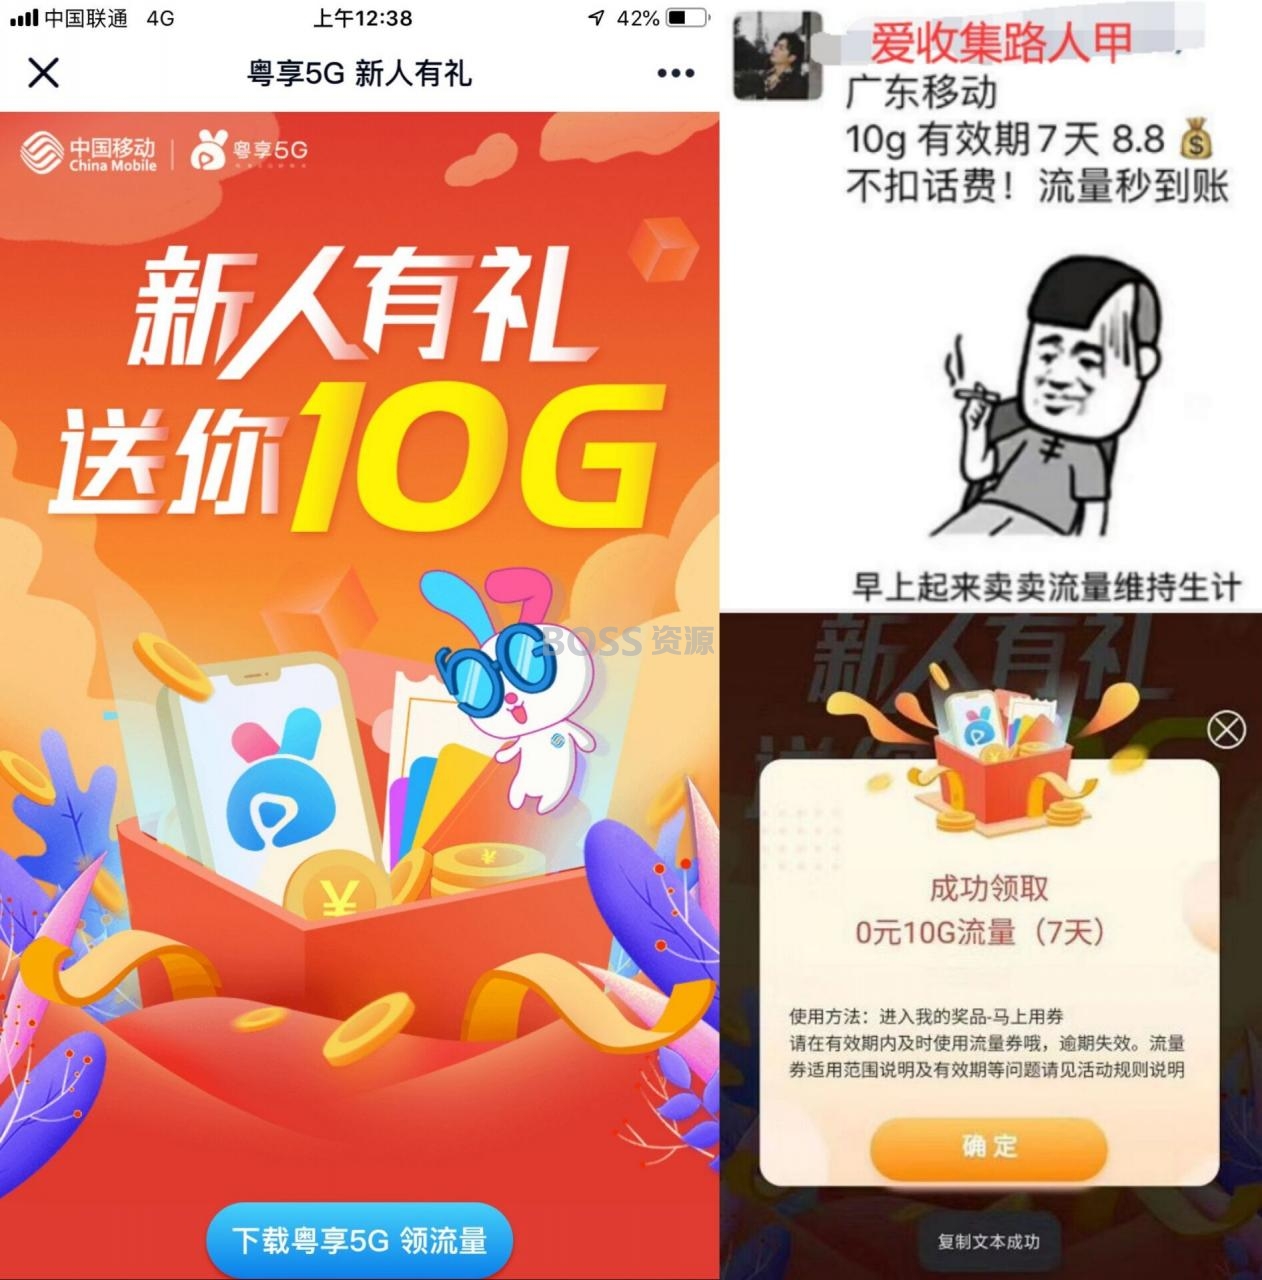 广东移动用户必领10G流量福利 – AT互联